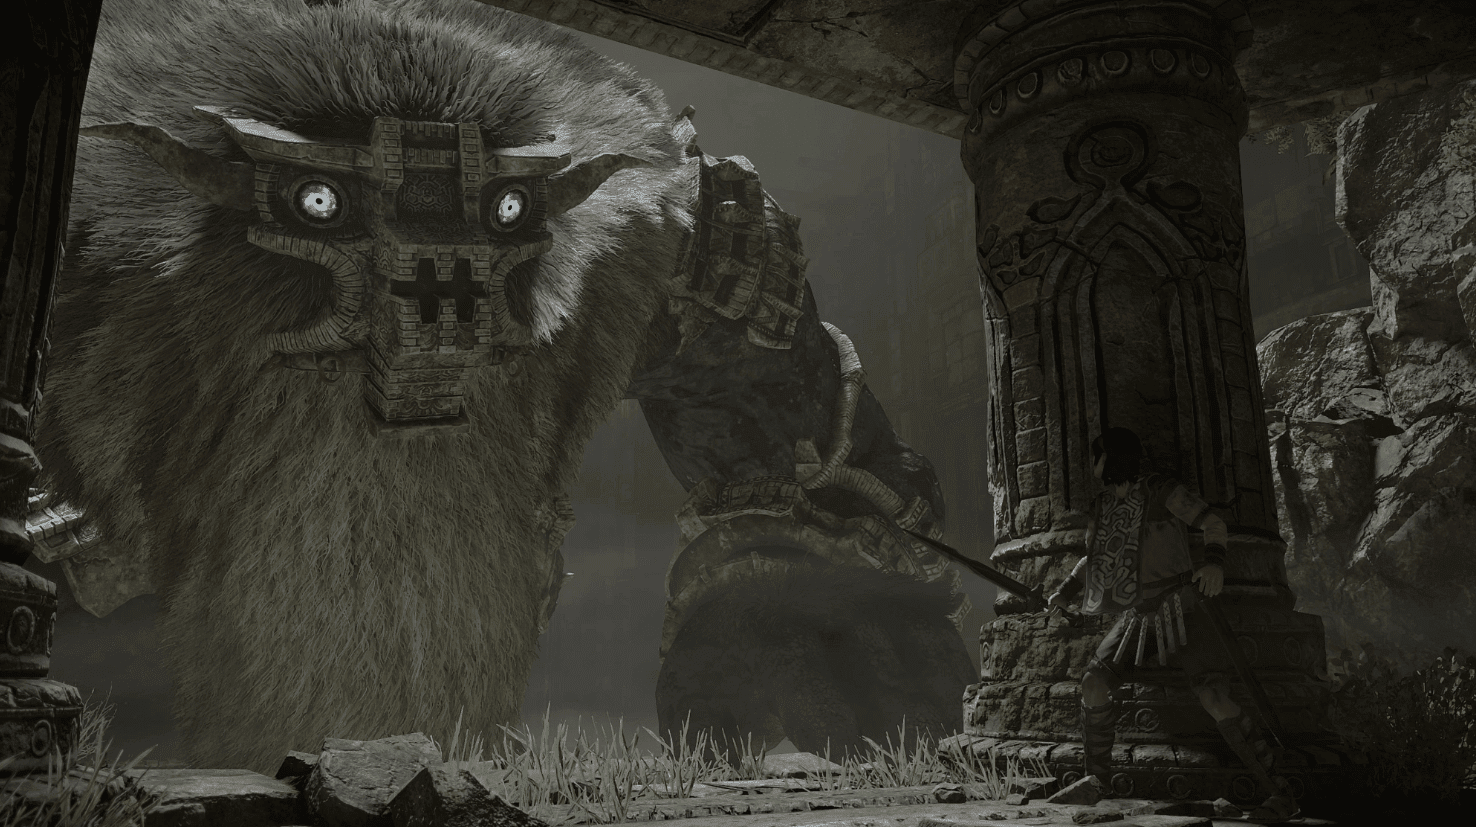 Shadow of the Colossus ganha um novo significado